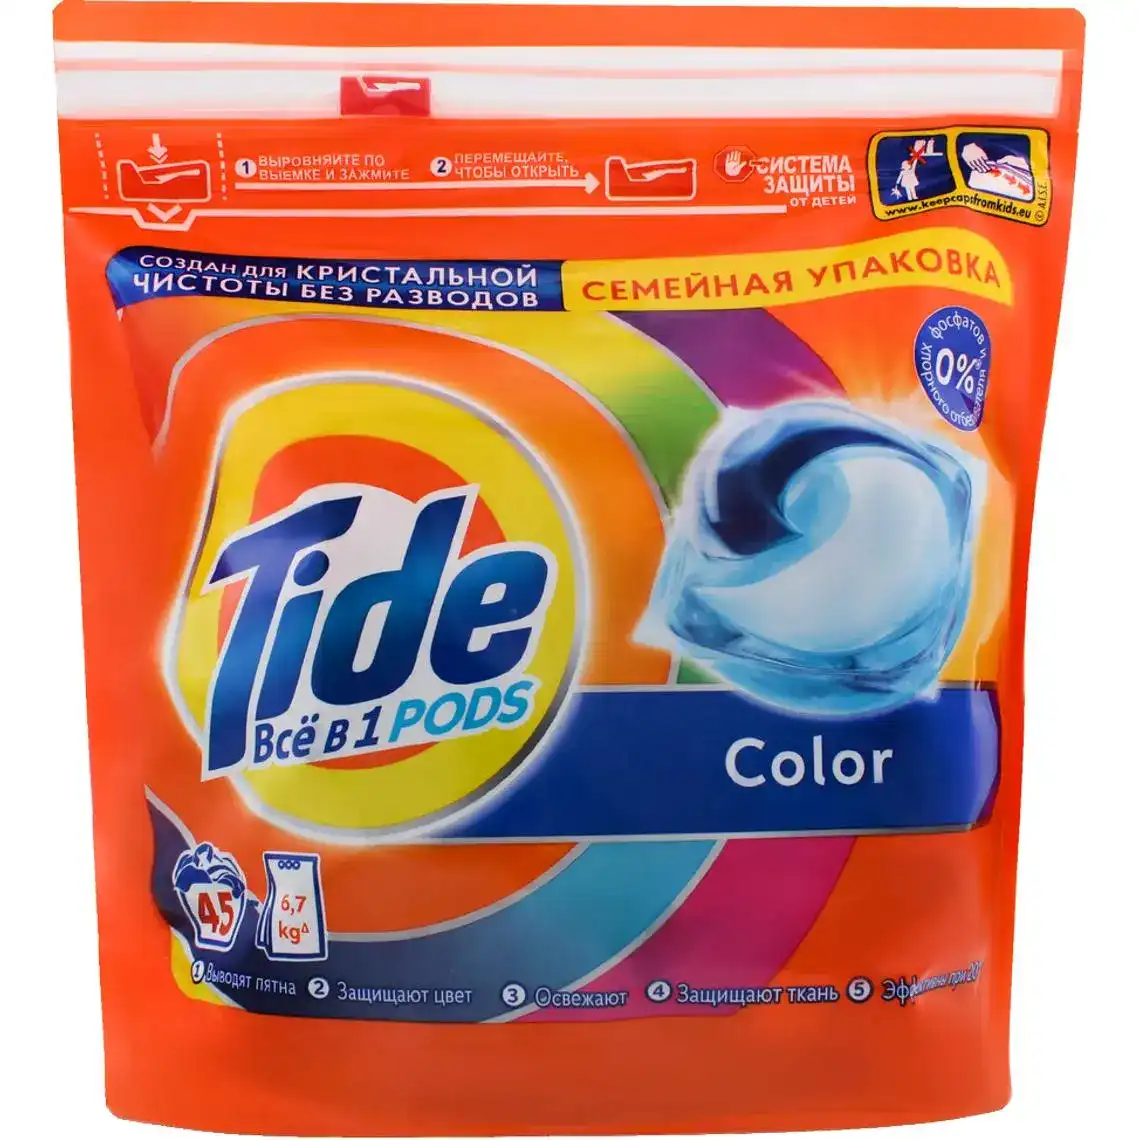 Капсули для прання Tide 3в1 Pods Color 45 шт.